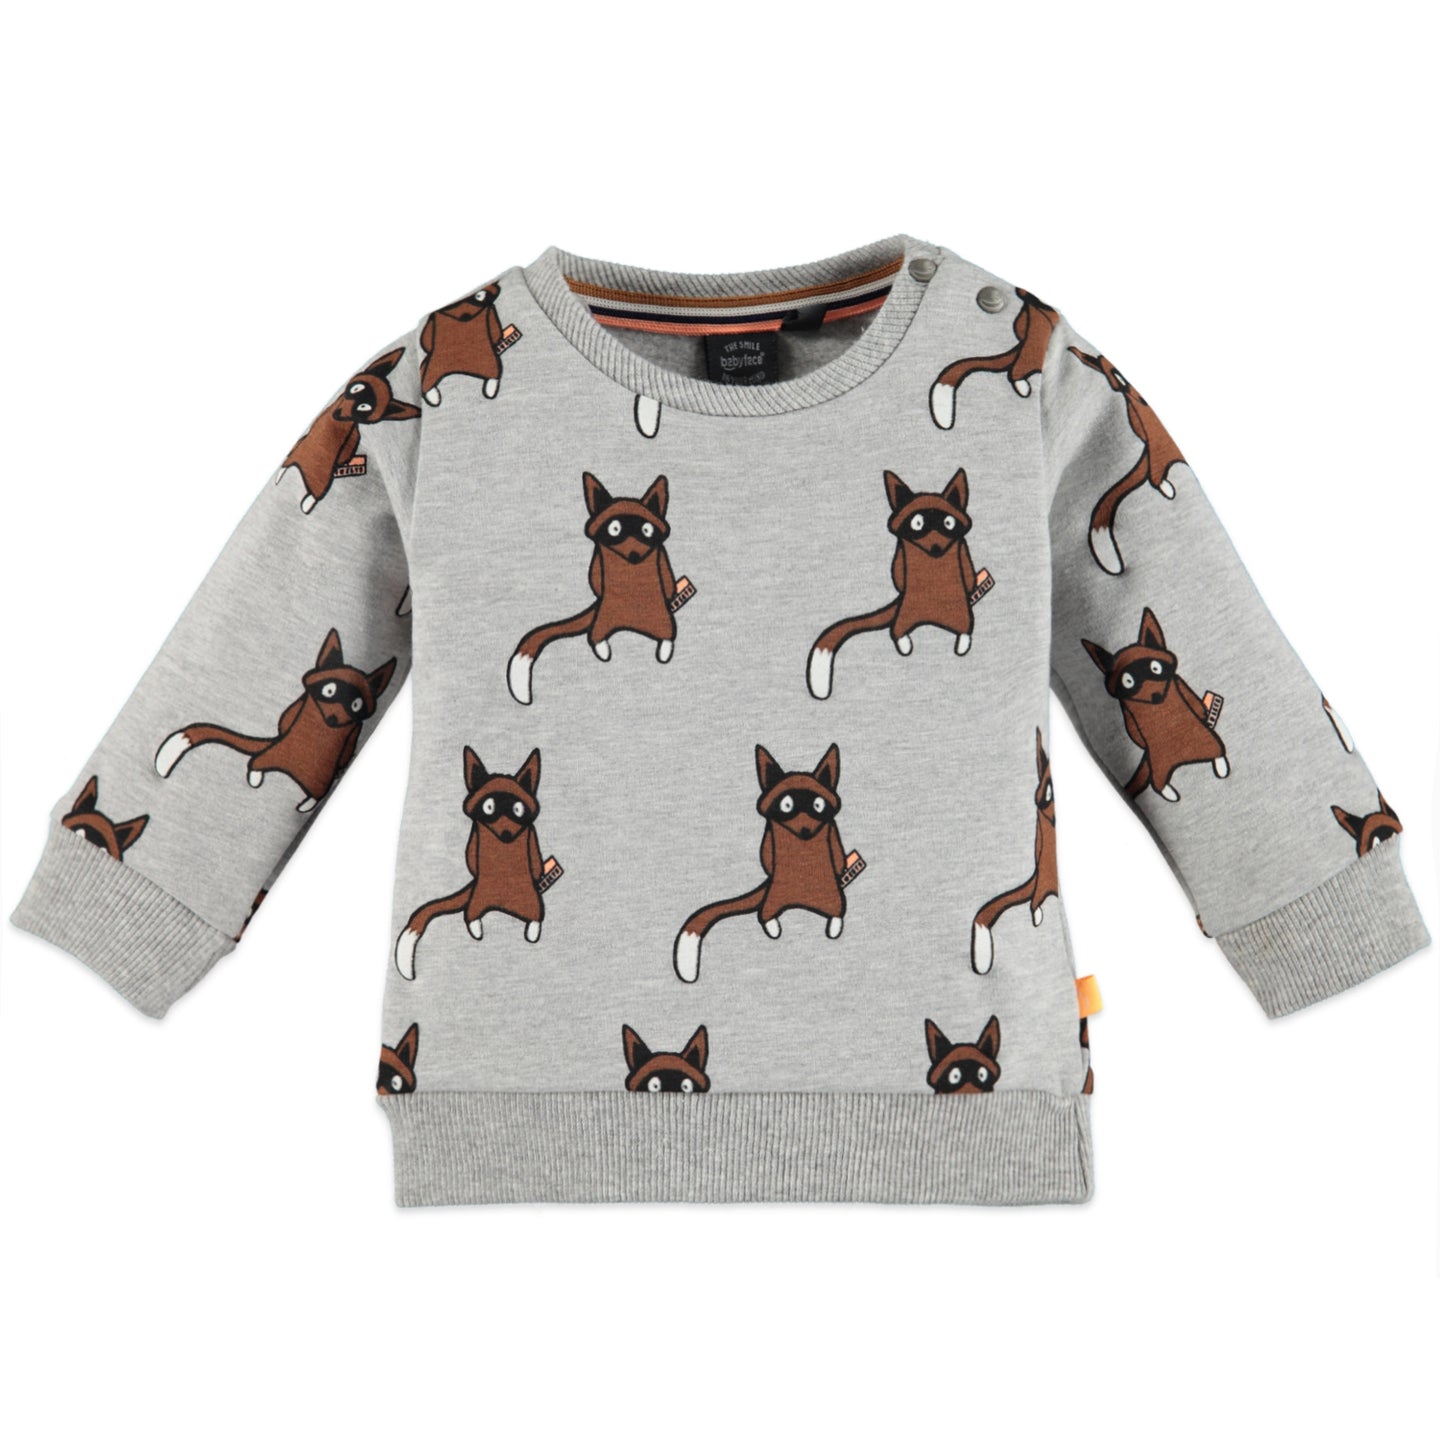 Babyface - Organic Raccoons Baby Sweatshirt - Grey Melee